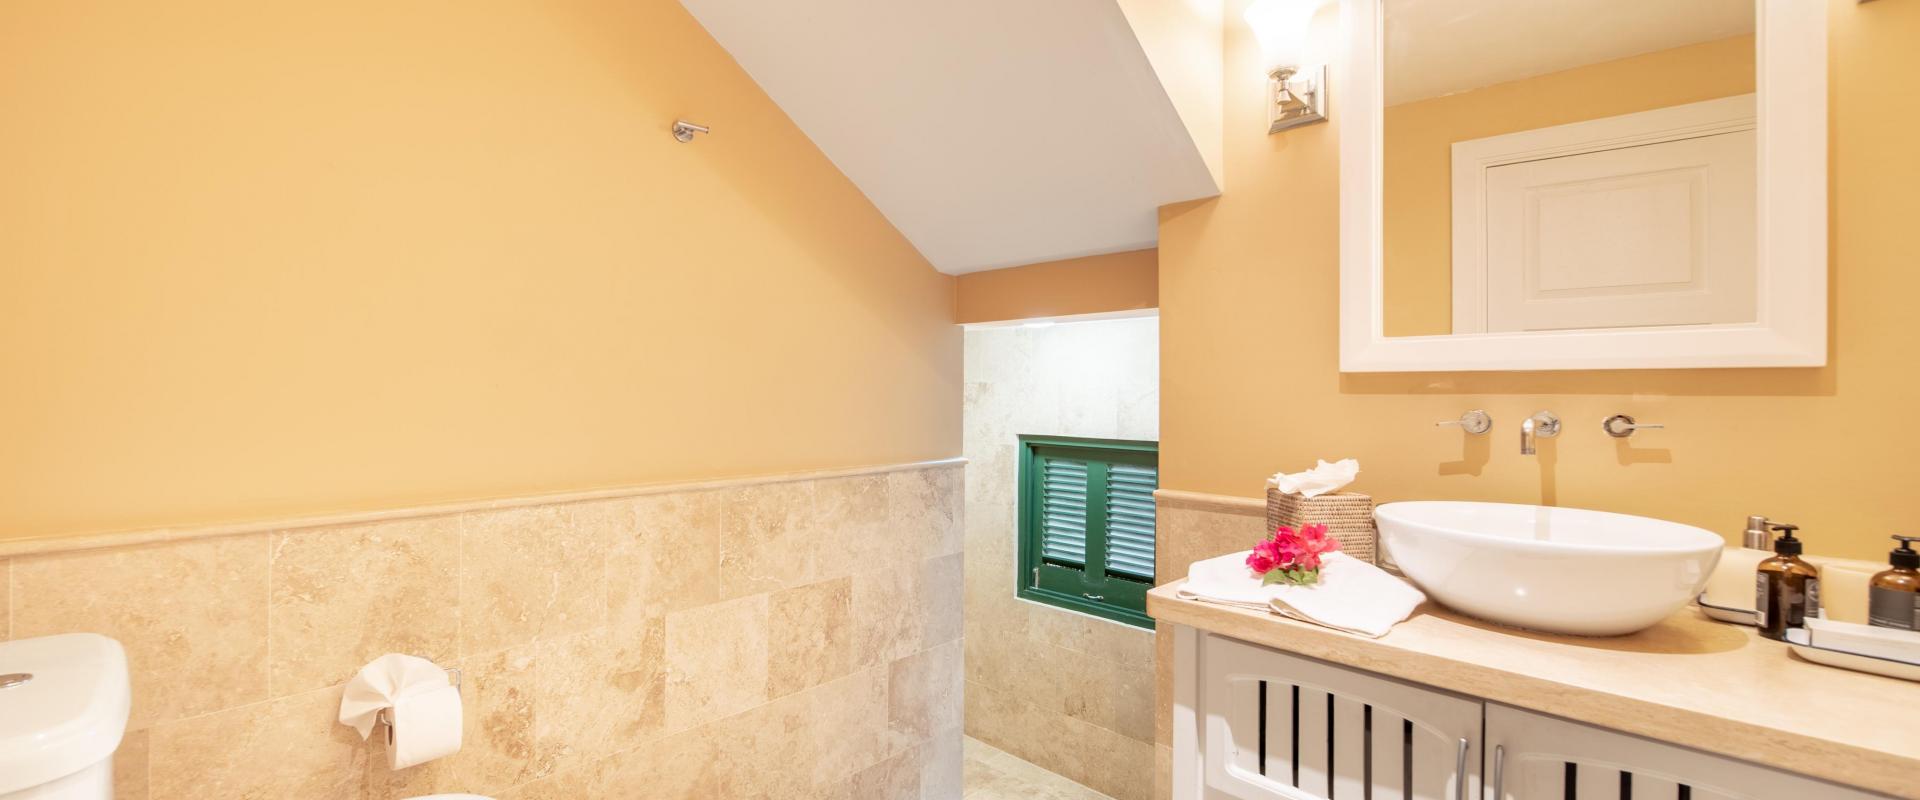 Coco Mullins Barbados Holiday Rental Home Bathroom 4